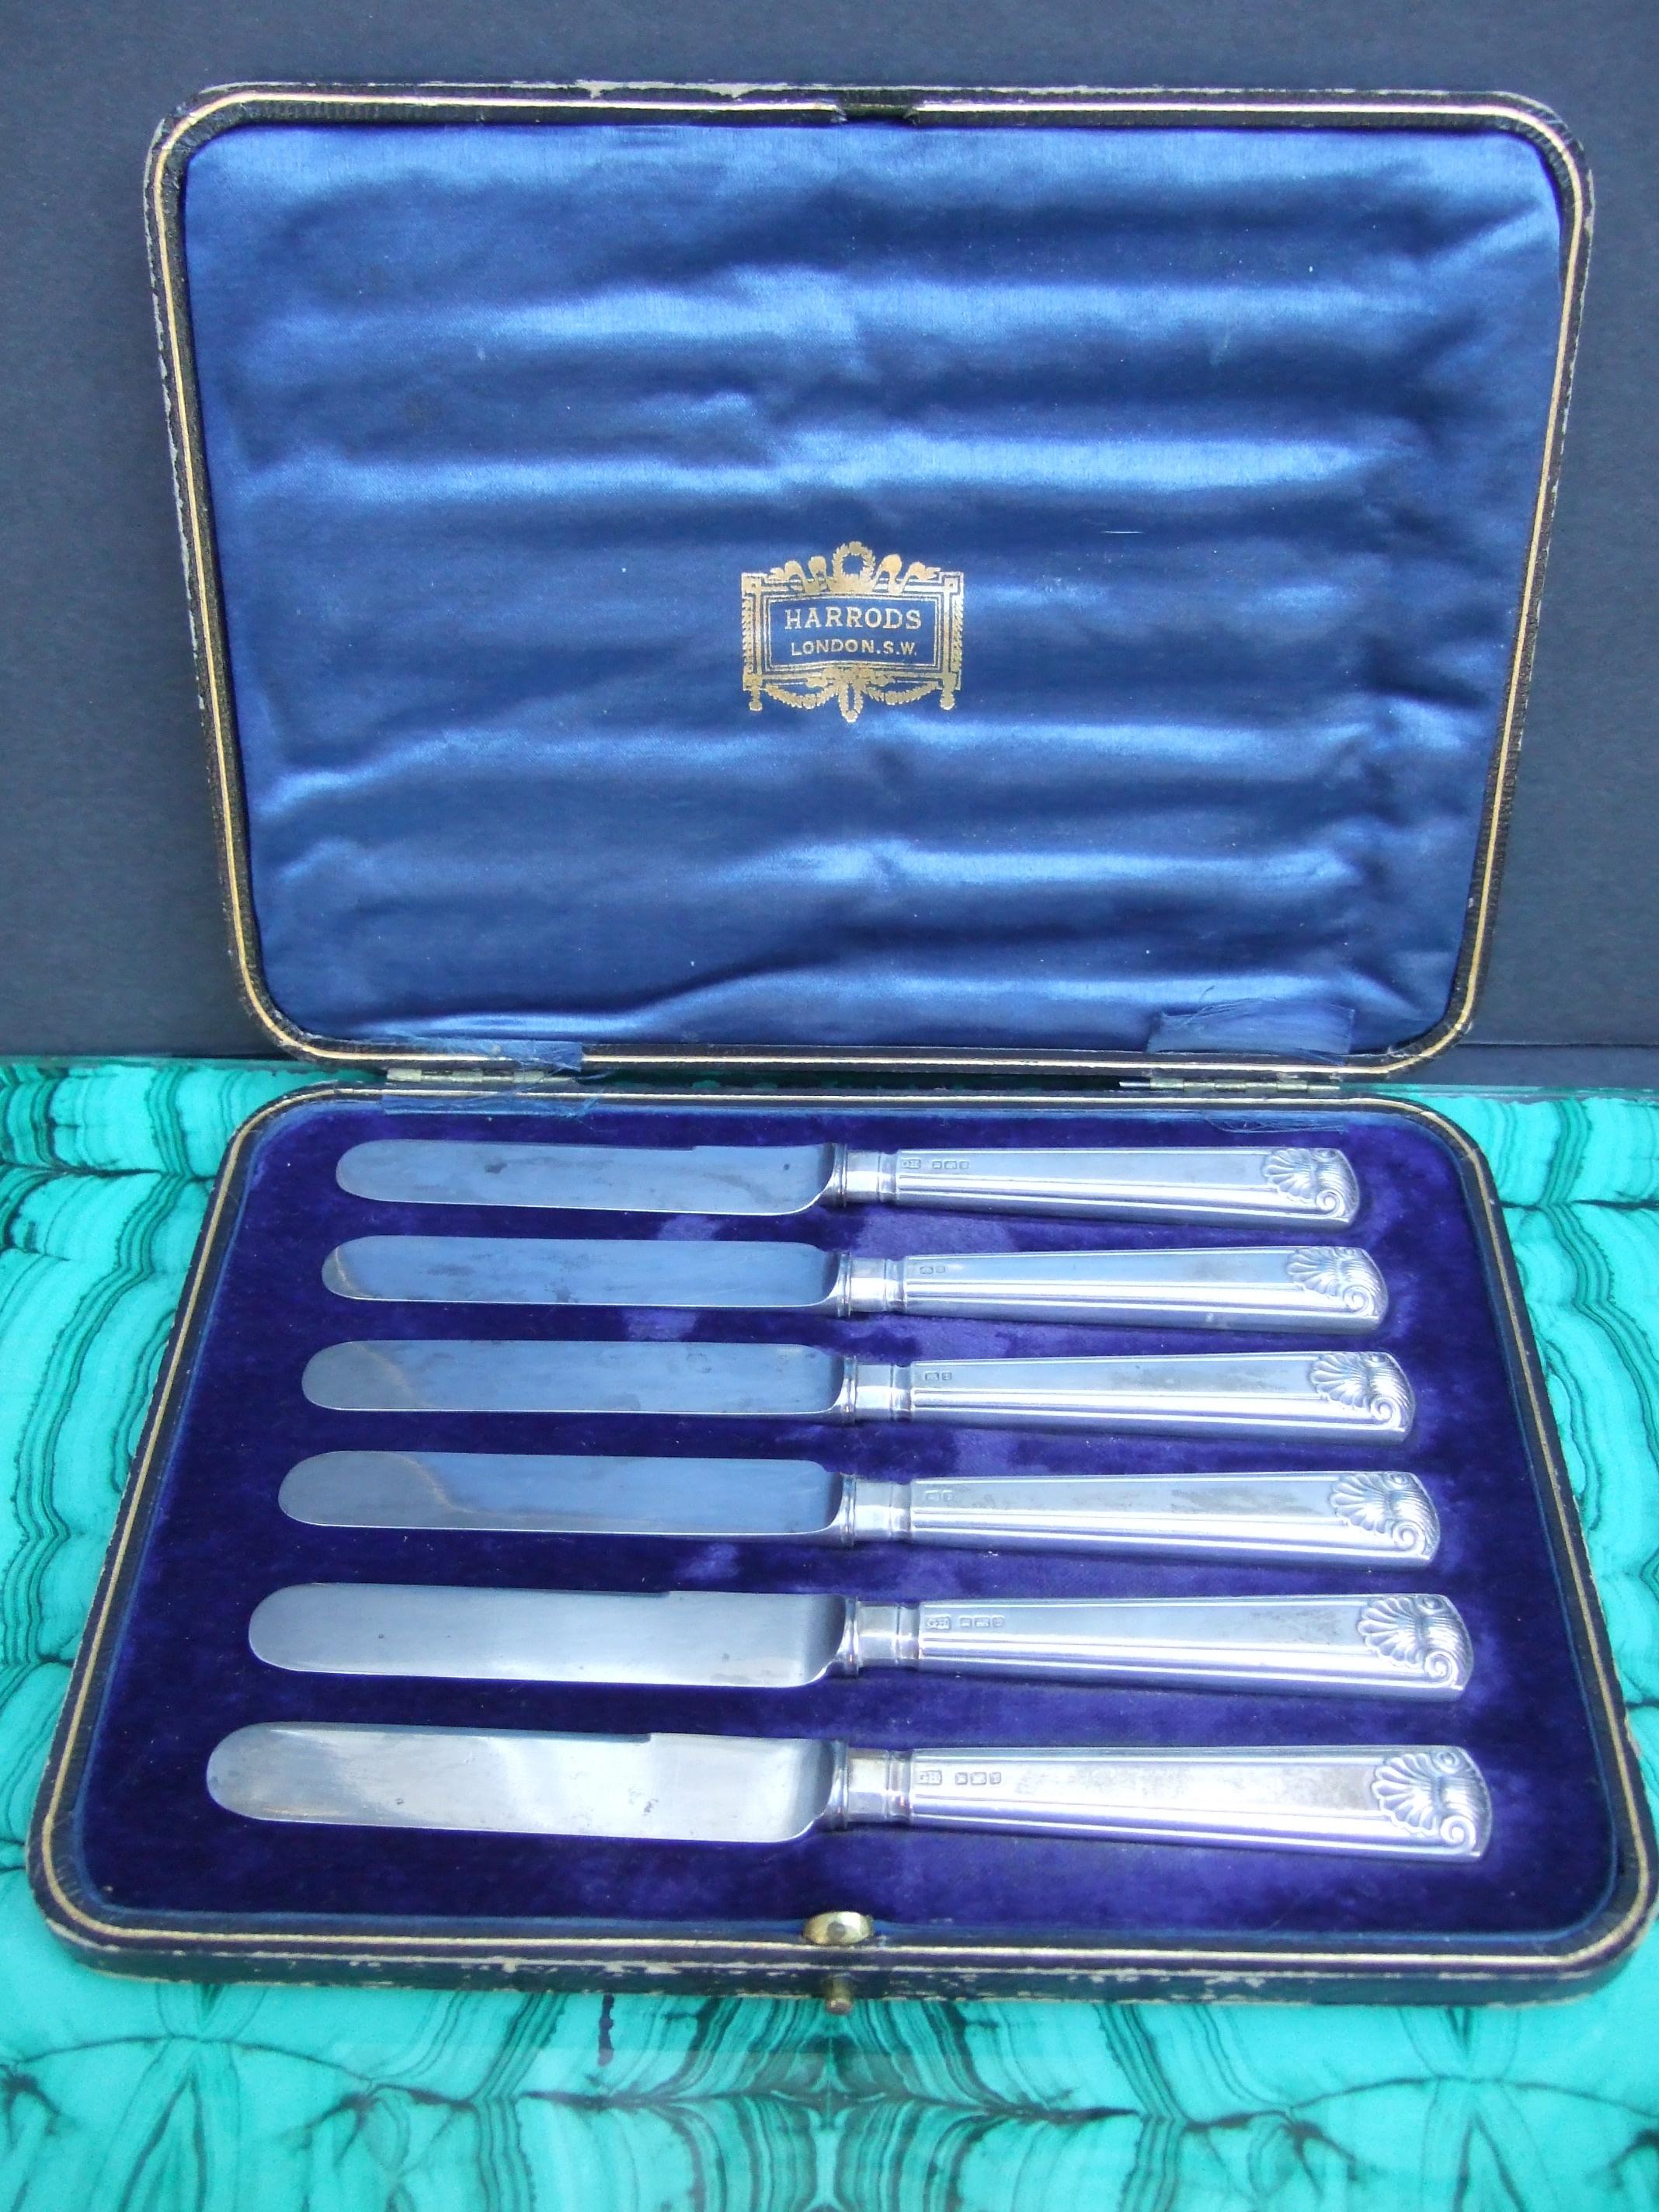 Harrods London - Ensemble de six petits couteaux à apéritif dans leur boîte de présentation originale doublée de soie, années 1920.

L'élégant ensemble de couteaux à apéritif présente un motif de coquille Saint-Jacques sur le manche.   
Une élégante